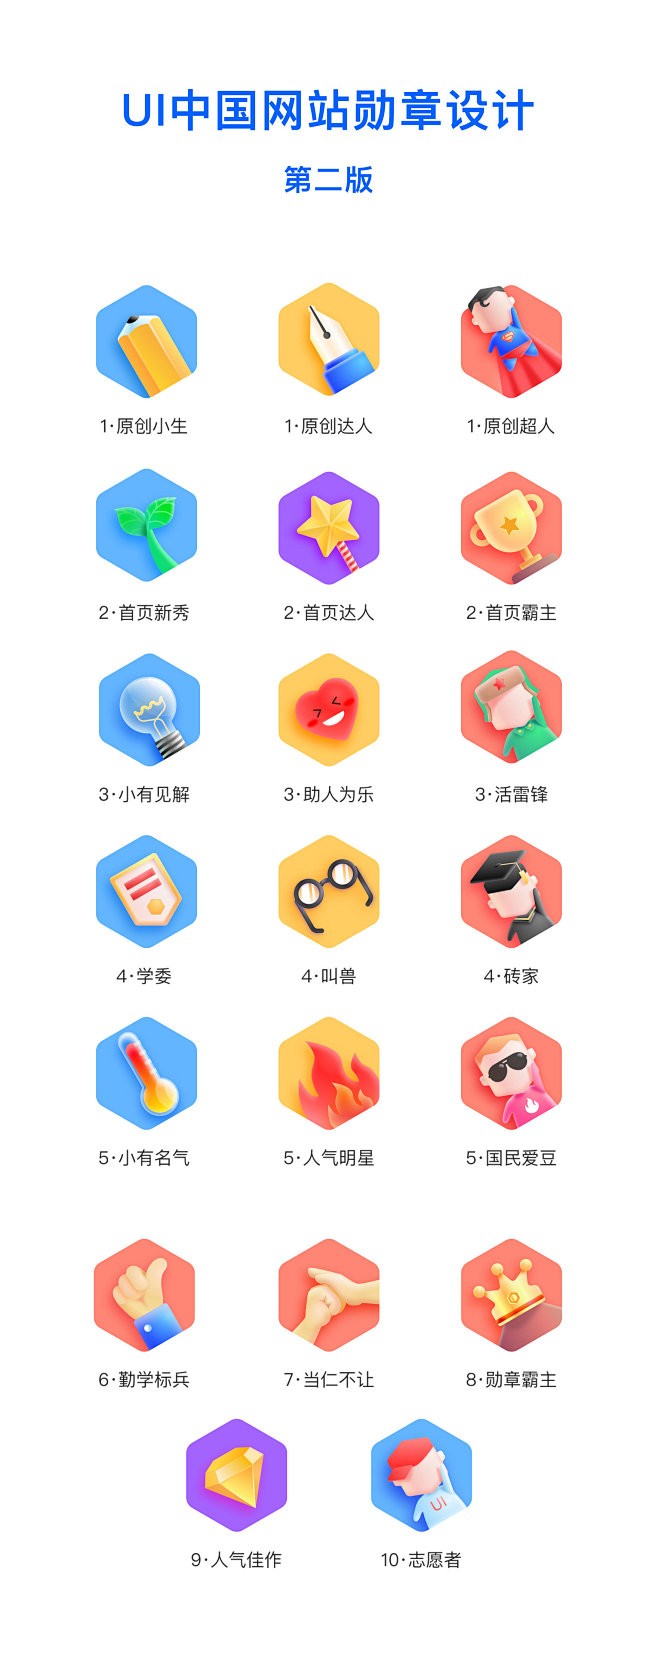 UI中国网站勋章设计-微拟物风